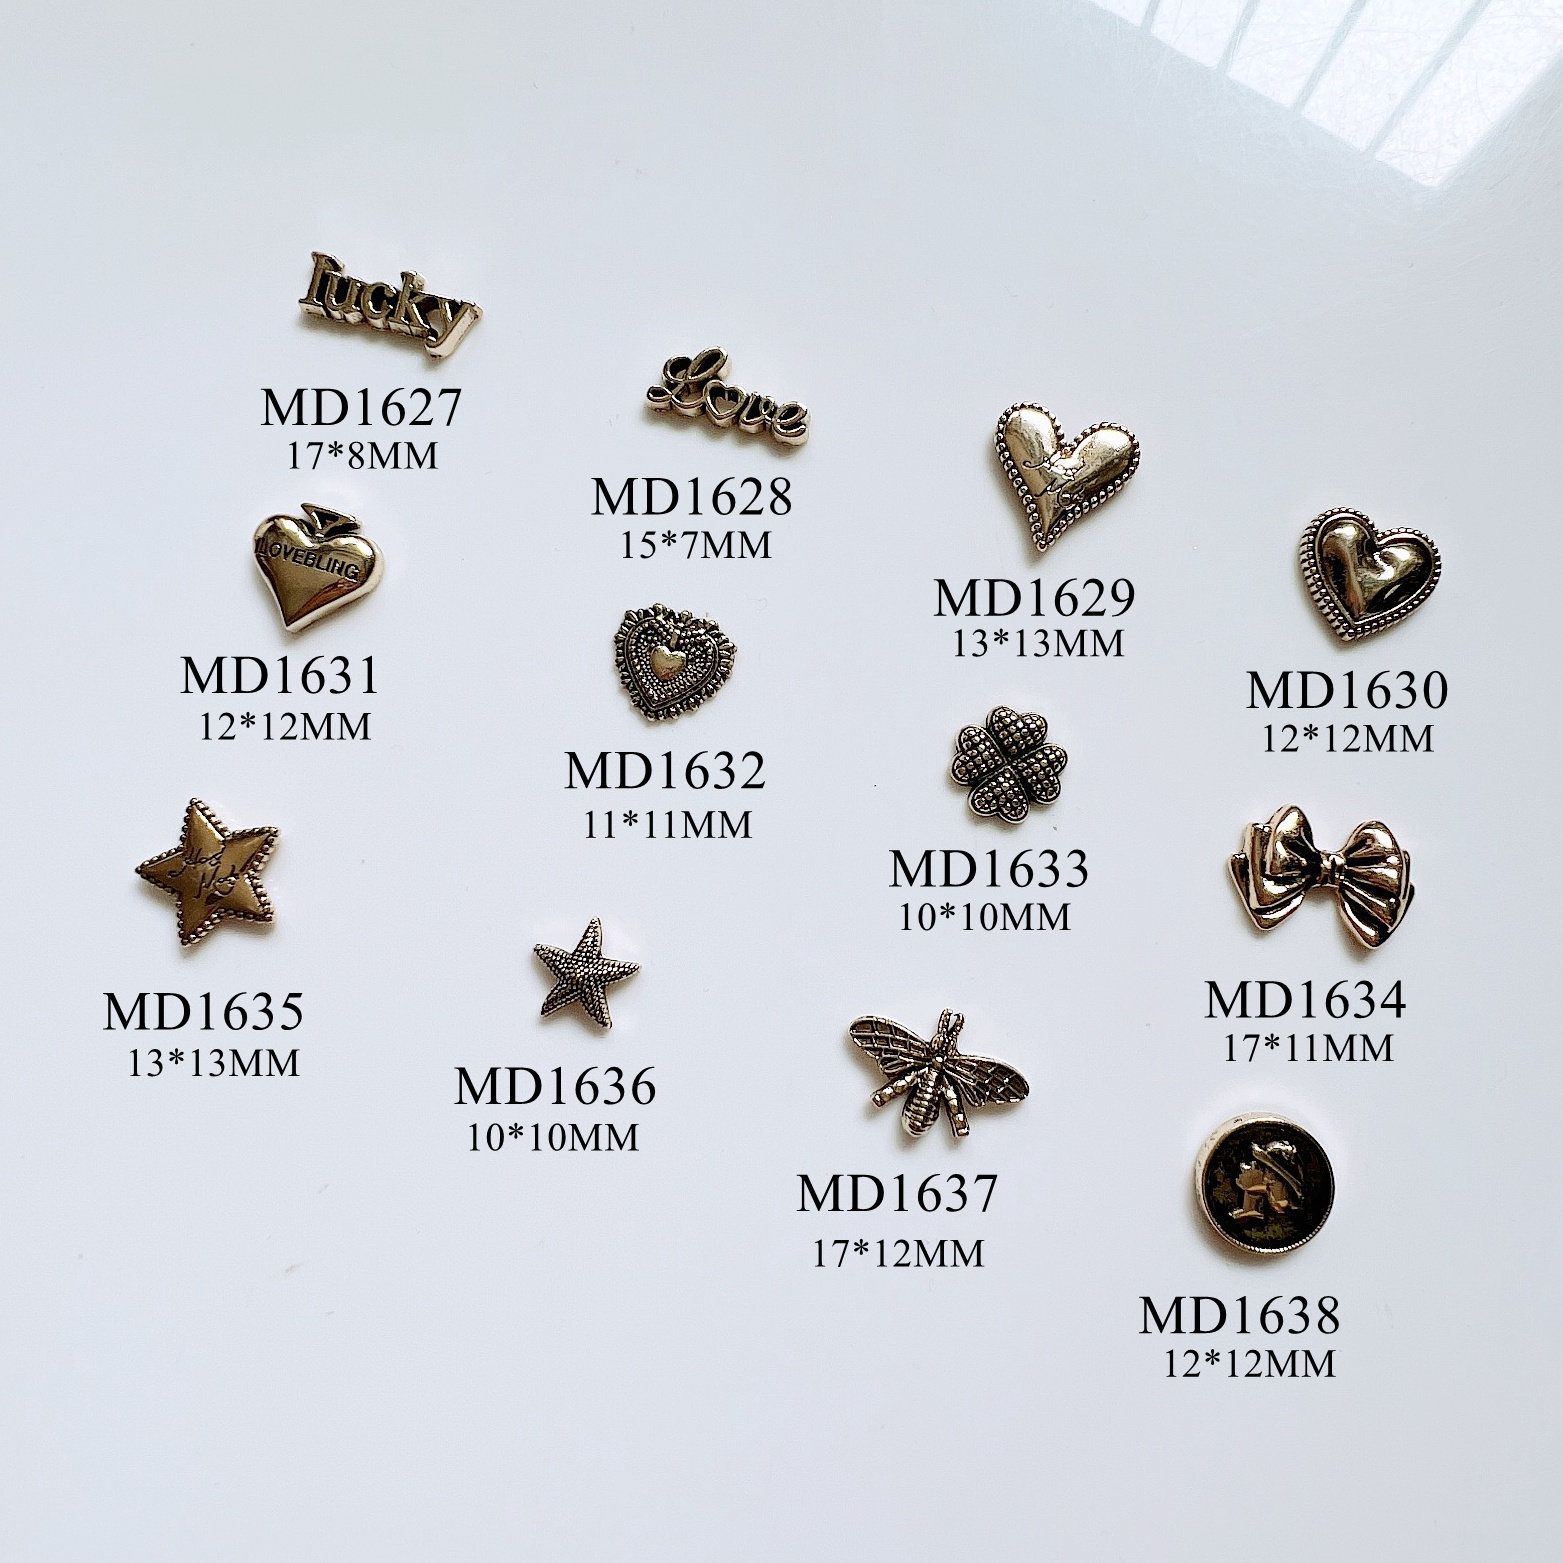 5 Stück Metall 3D Charms Dekoration Perle Blume Herz Oval Formen Nagelkunst Md1618-1626 von NailAngel2019